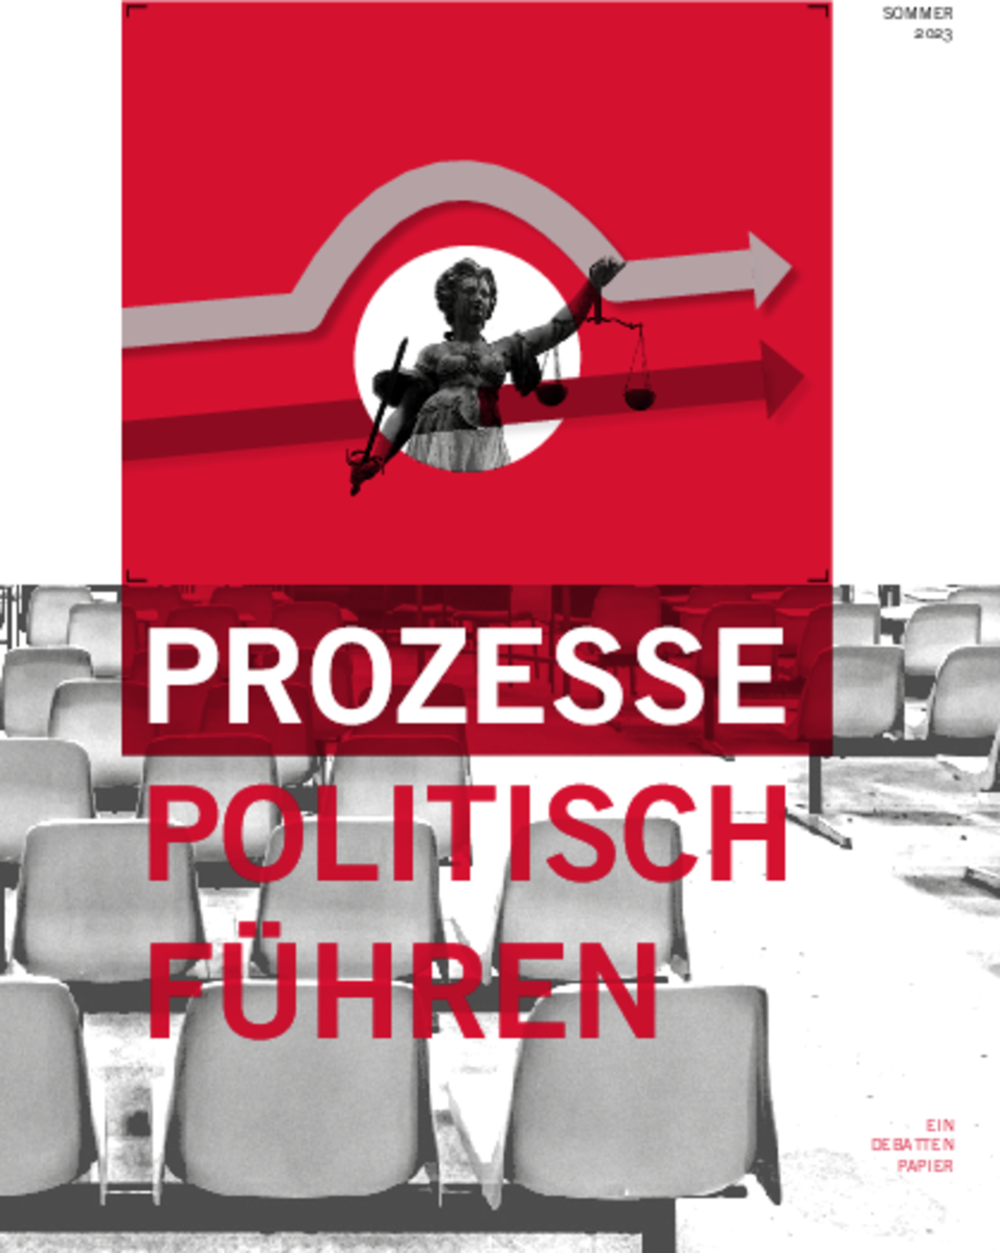 Vorschaubild: Broschüre "Prozesse politisch führen"